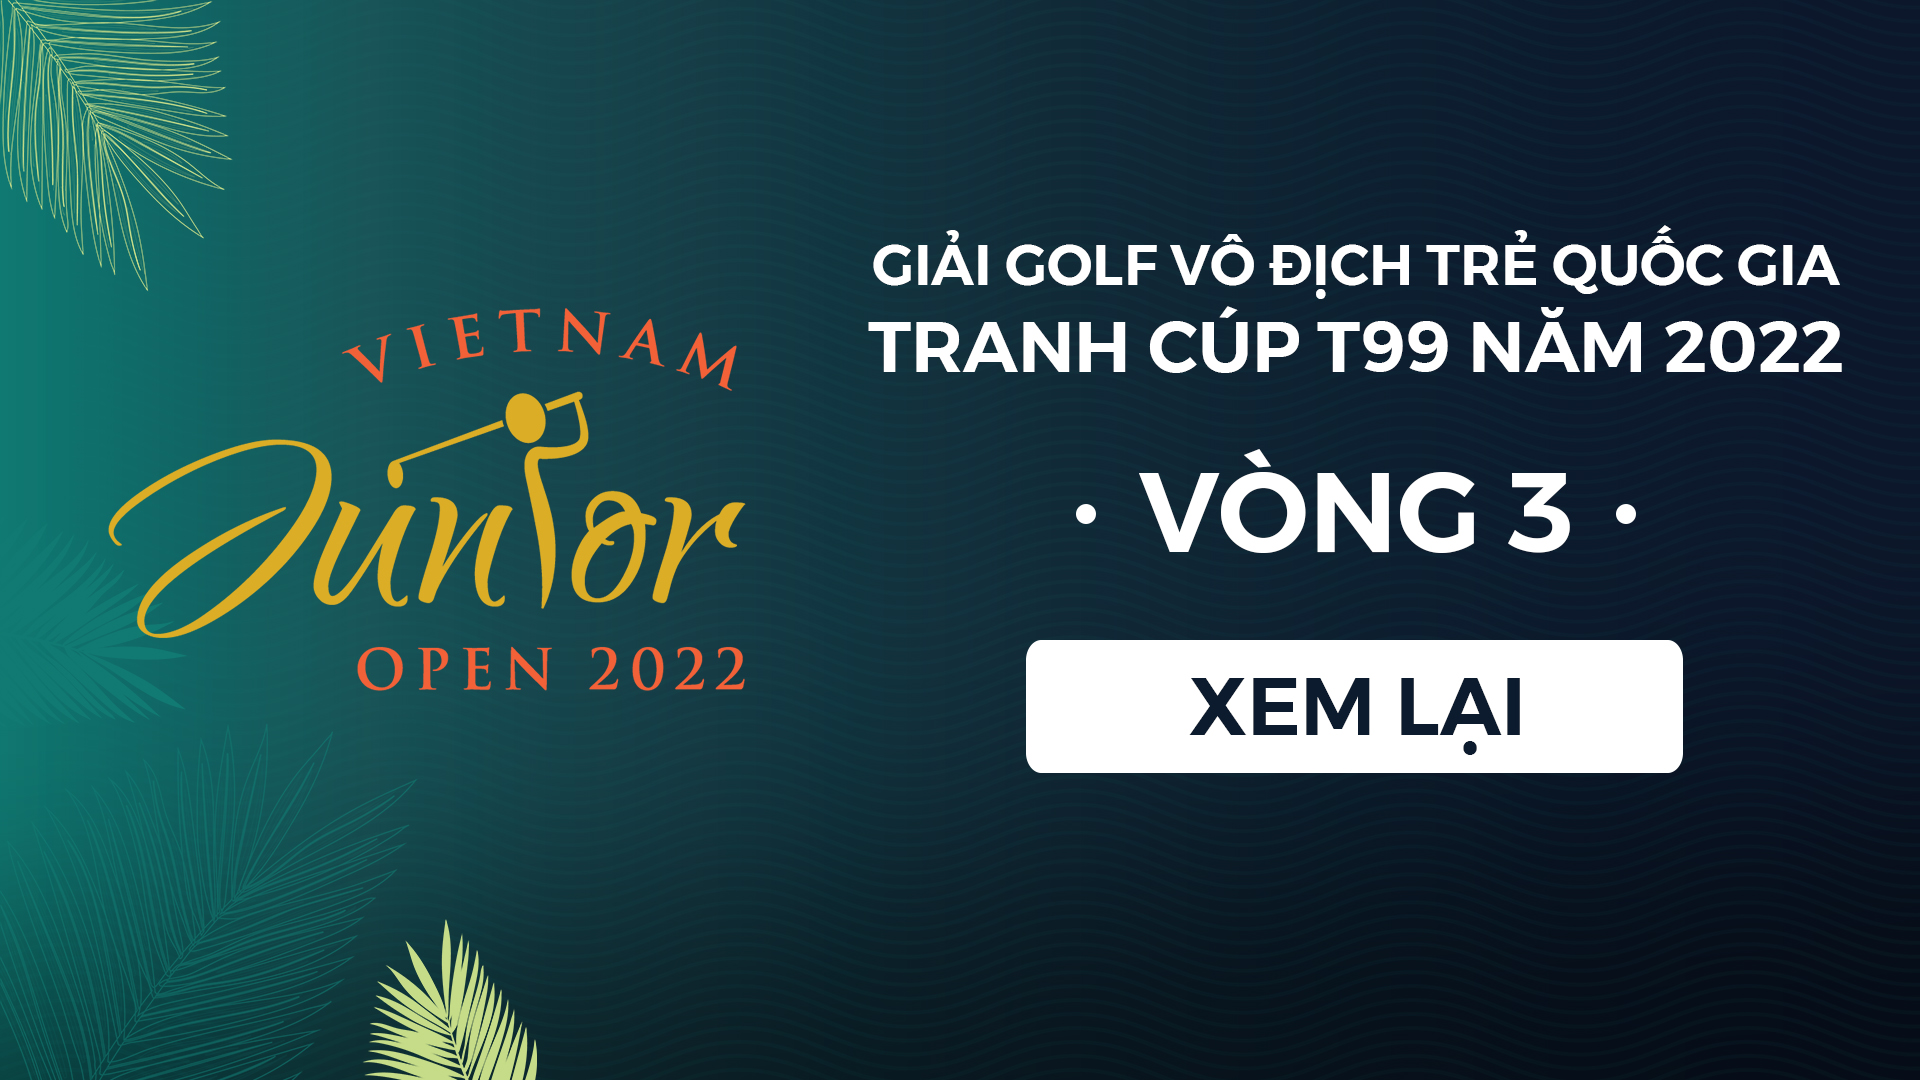 Giải golf Vô địch trẻ Quốc gia 2022 - Vòng 3 - Giải golf Vô địch trẻ Quốc gia 2022